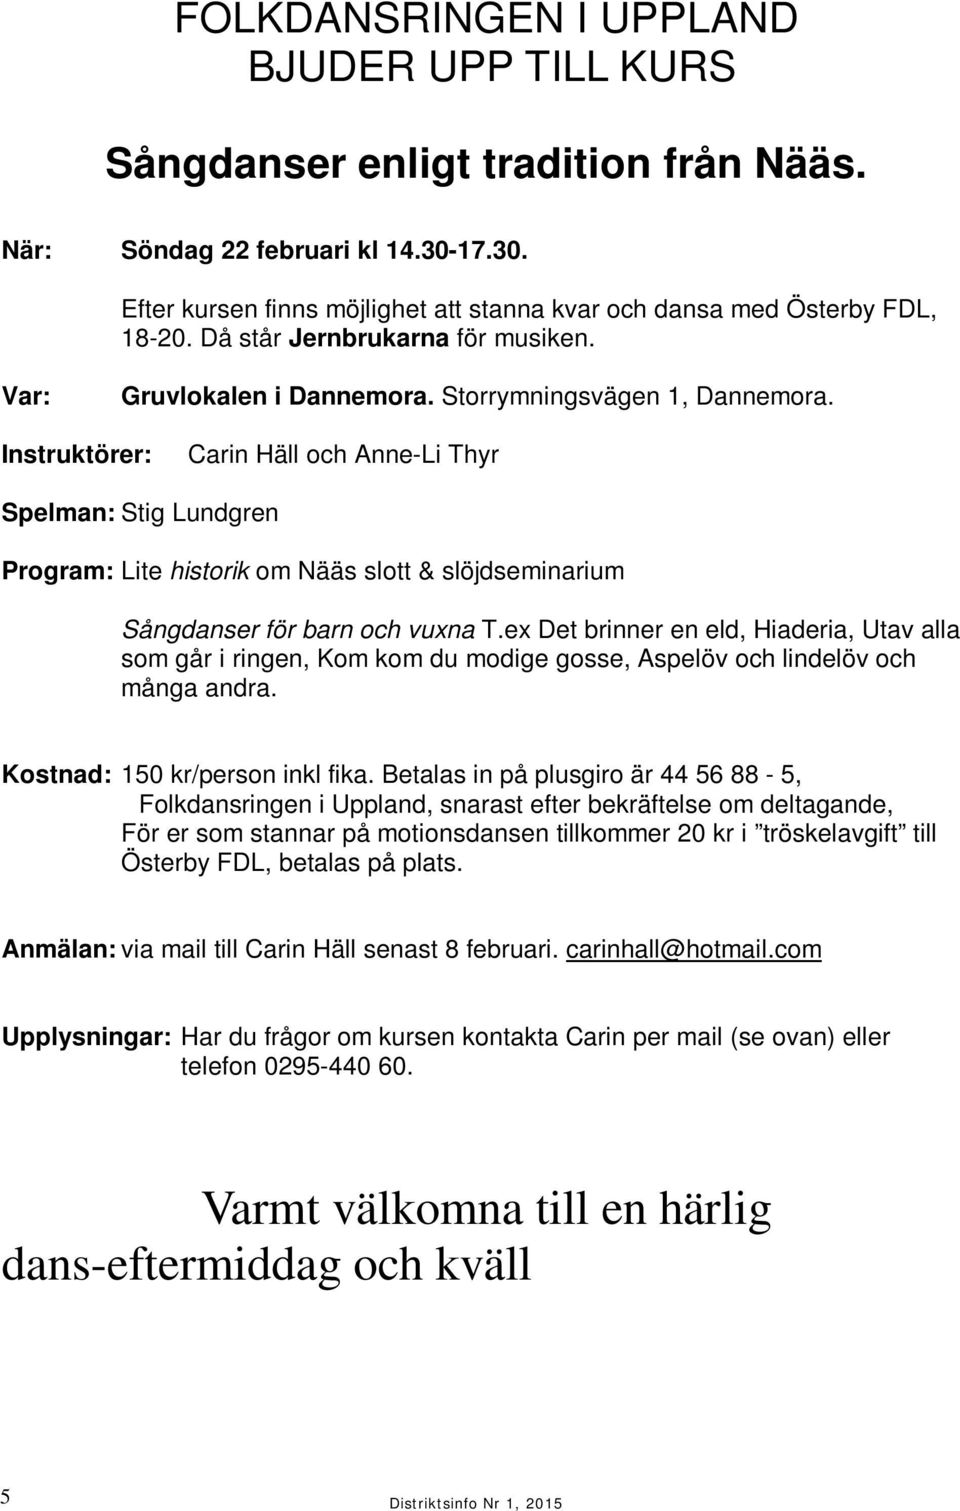 Instruktörer: Carin Häll och Anne-Li Thyr Spelman: Stig Lundgren Program: Lite historik om Nääs slott & slöjdseminarium Sångdanser för barn och vuxna T.